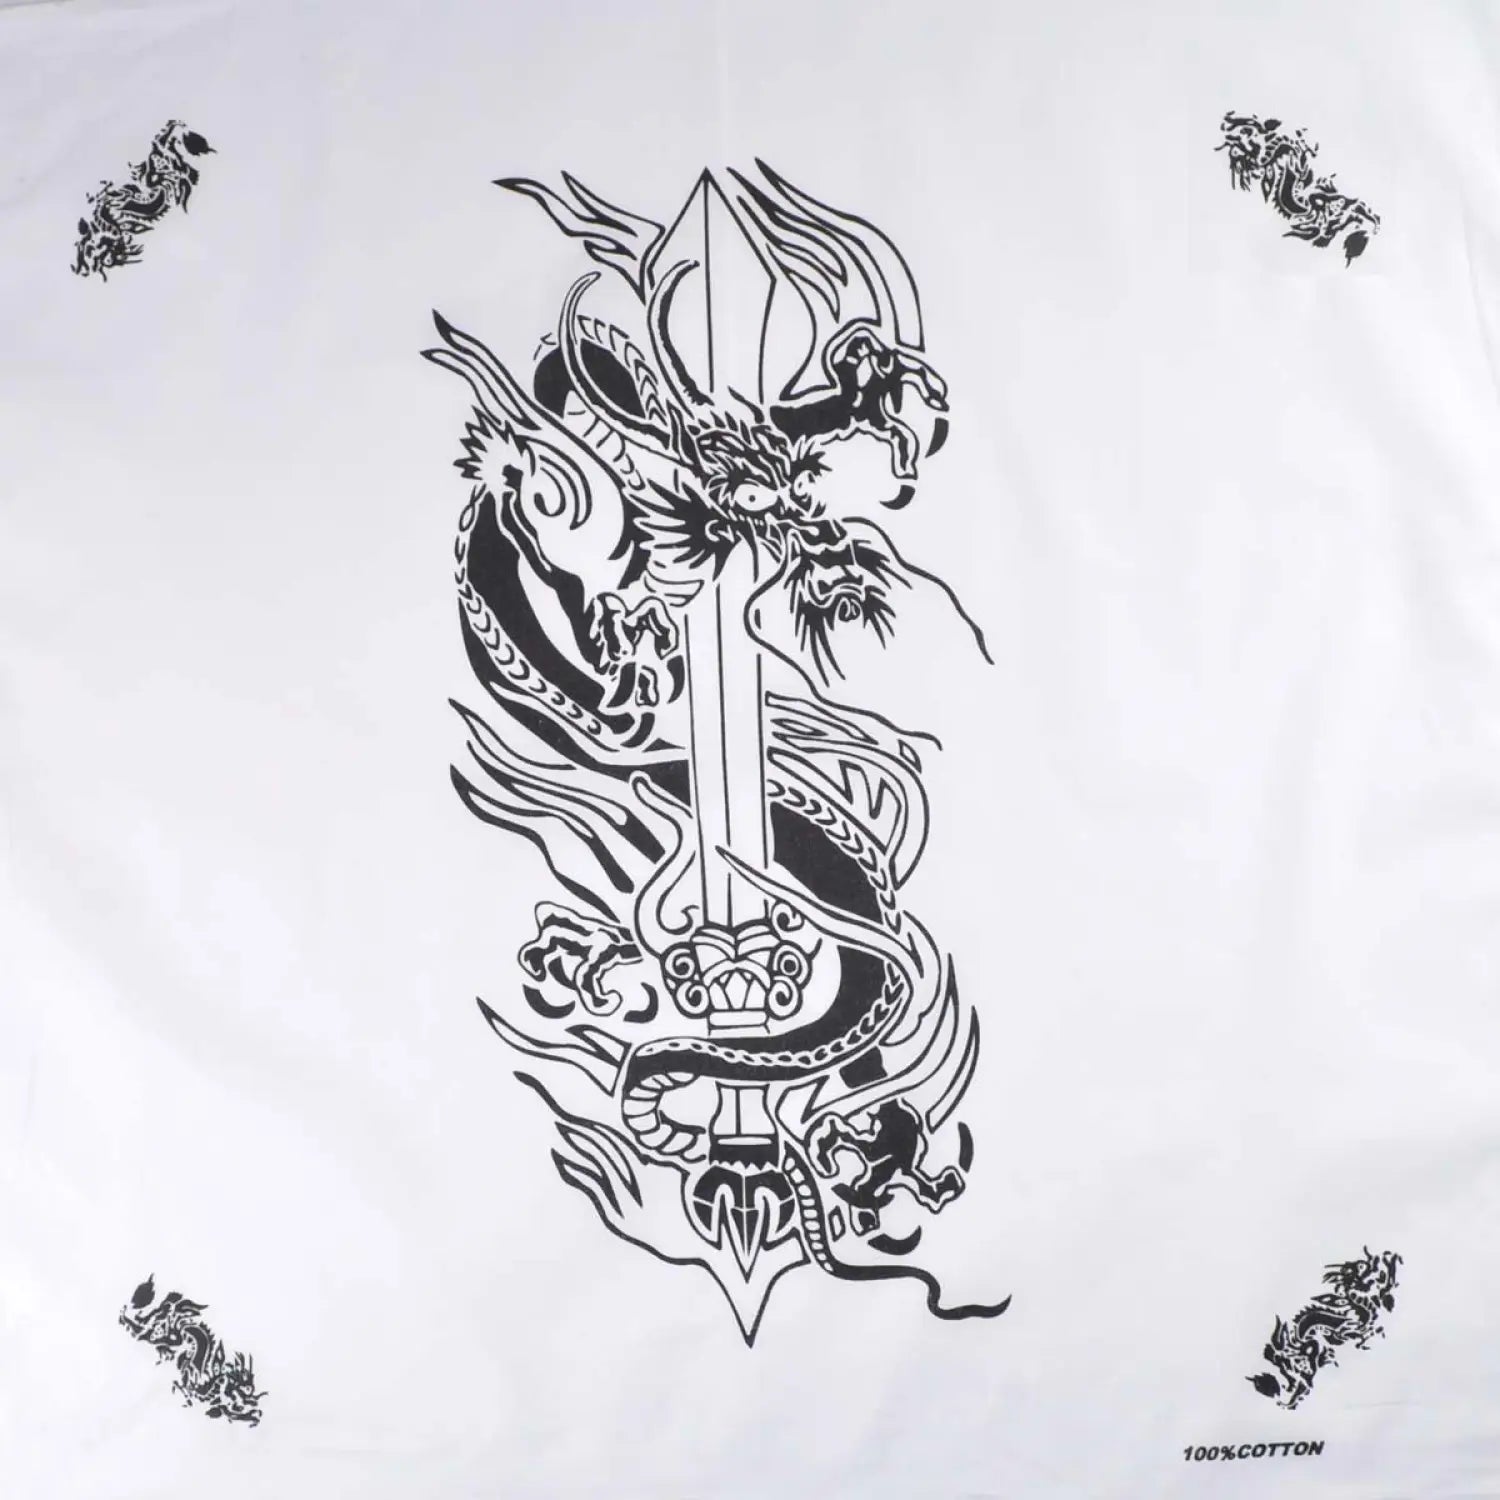 Dragon & Sword Print Bandana - 100% Cotton, White sheet with black dragon design